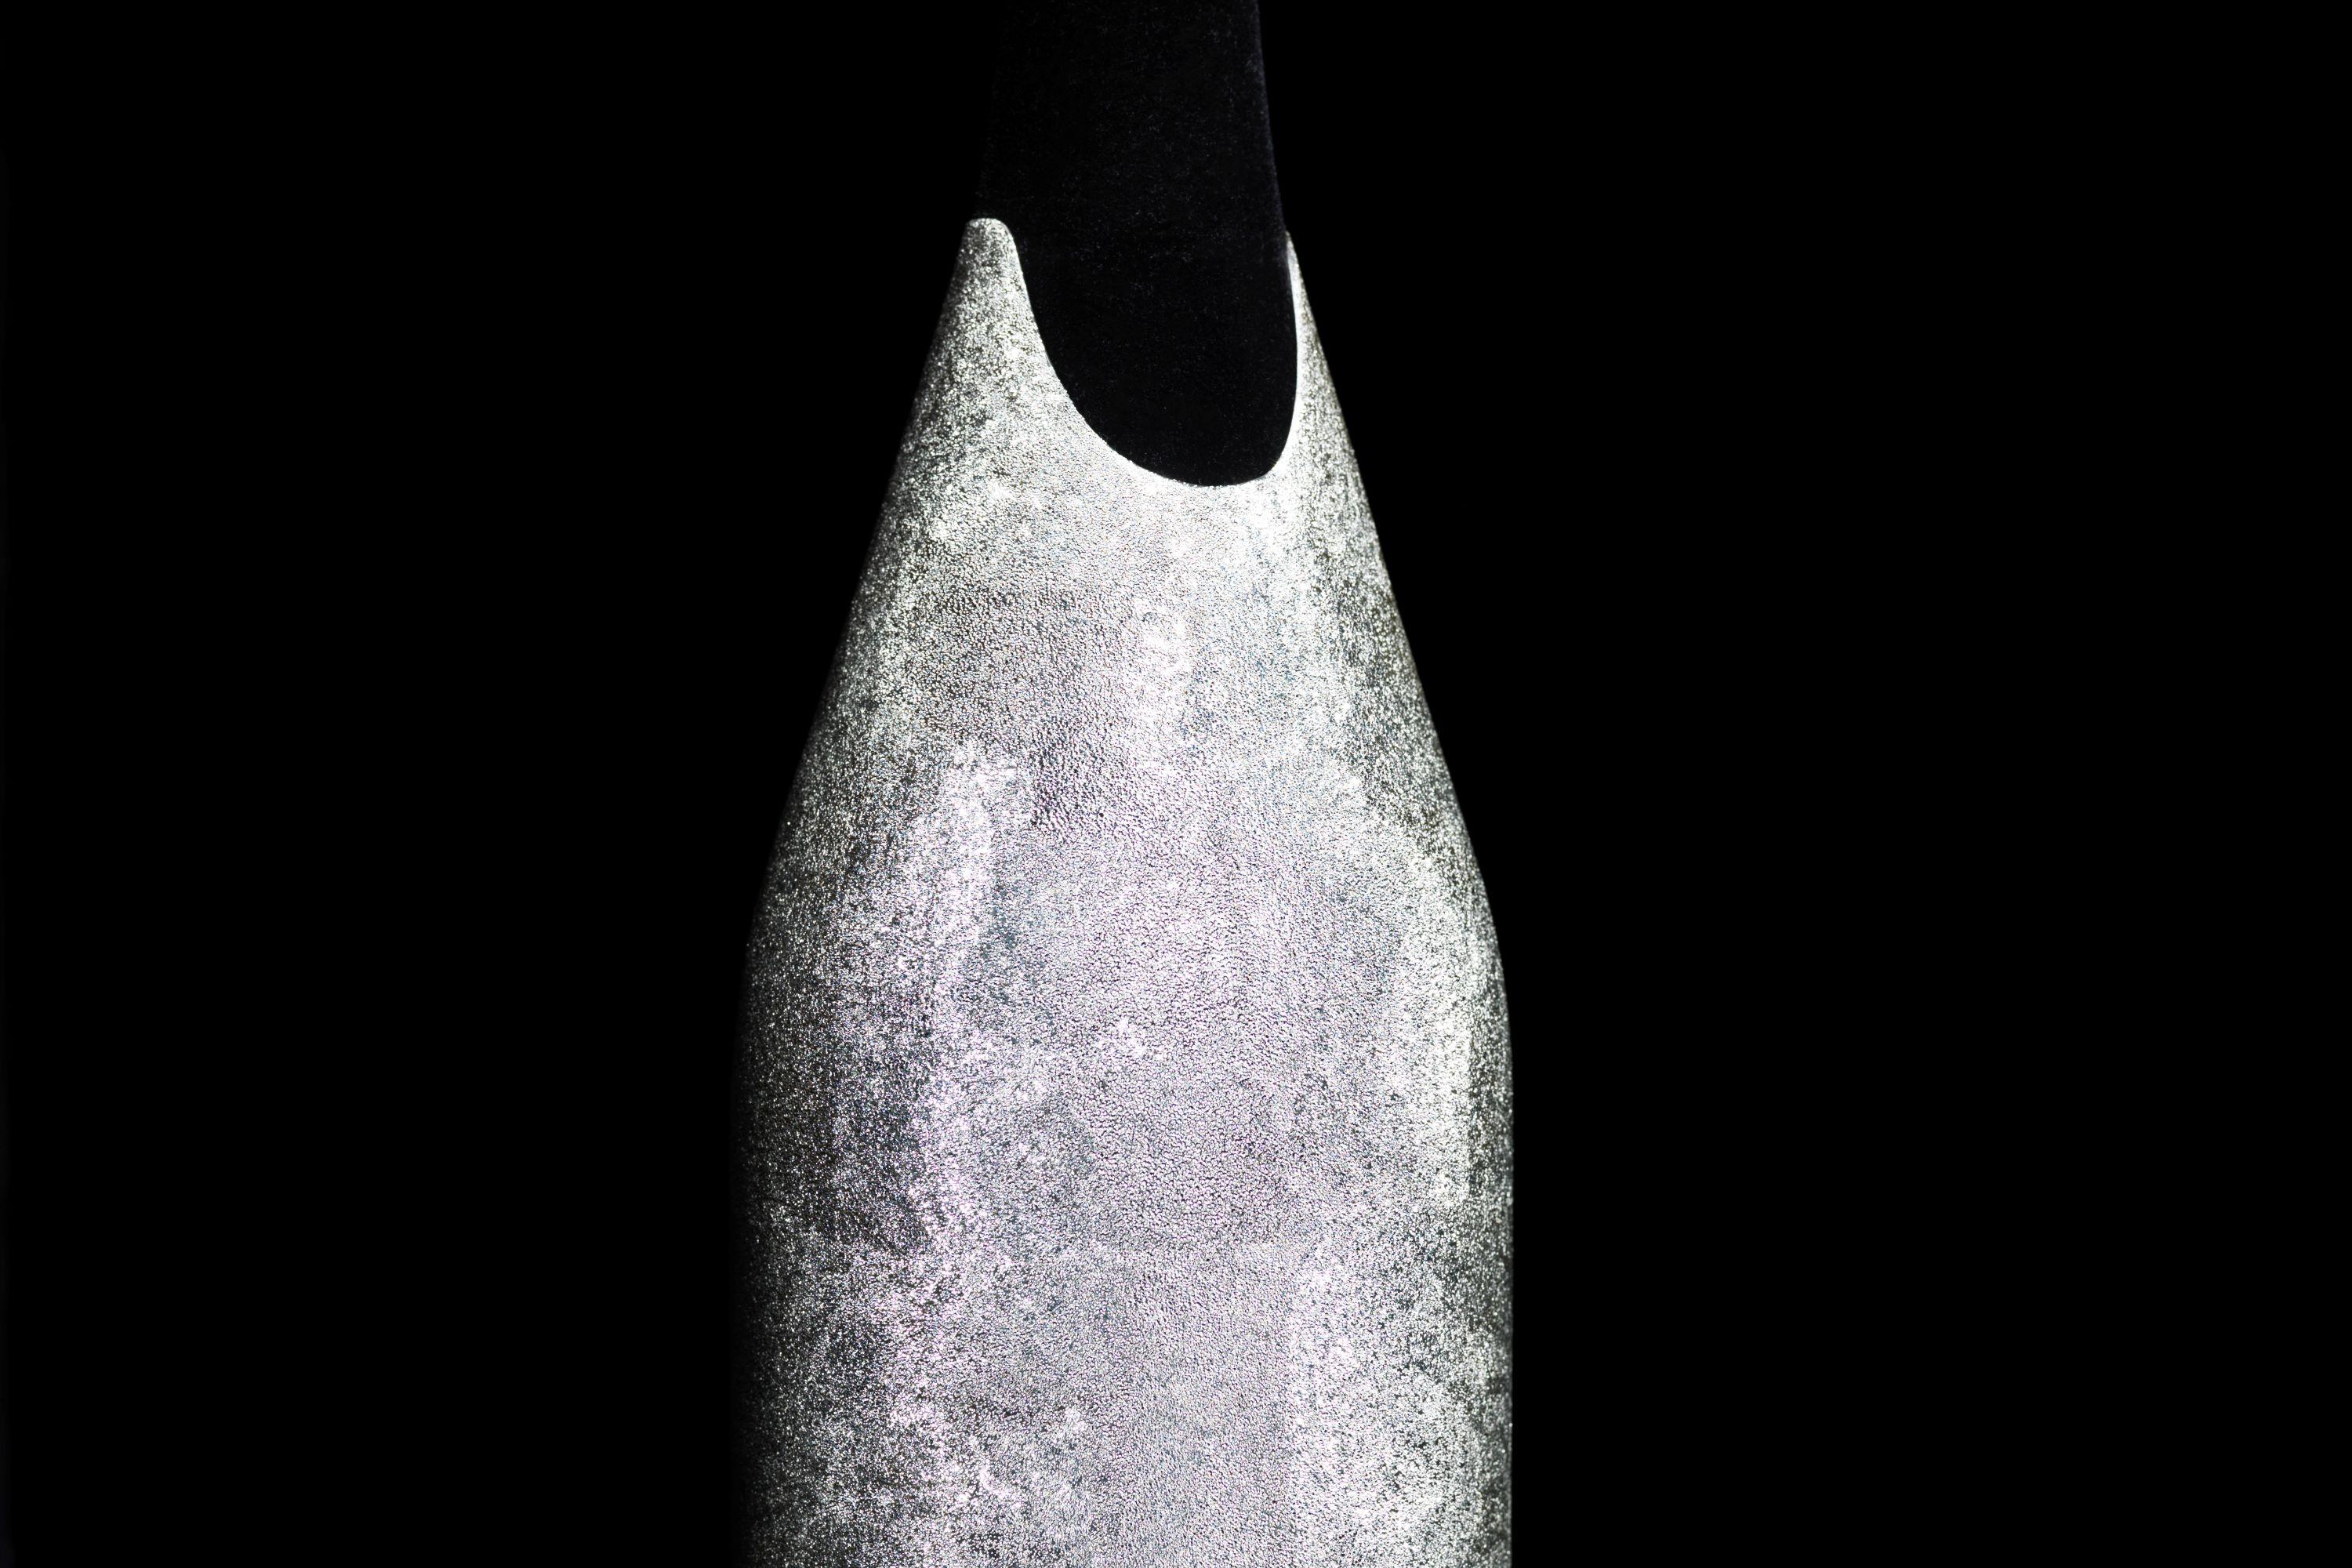  K-OVER LUNE DE CHAMPAGNE
La technologie innovante avec laquelle a été réalisée cette K-OVER champagne en fait un objet de grande valeur. Comme on peut le voir clairement dans les images, la surface de K-OVER est brillante et scintillante comme la